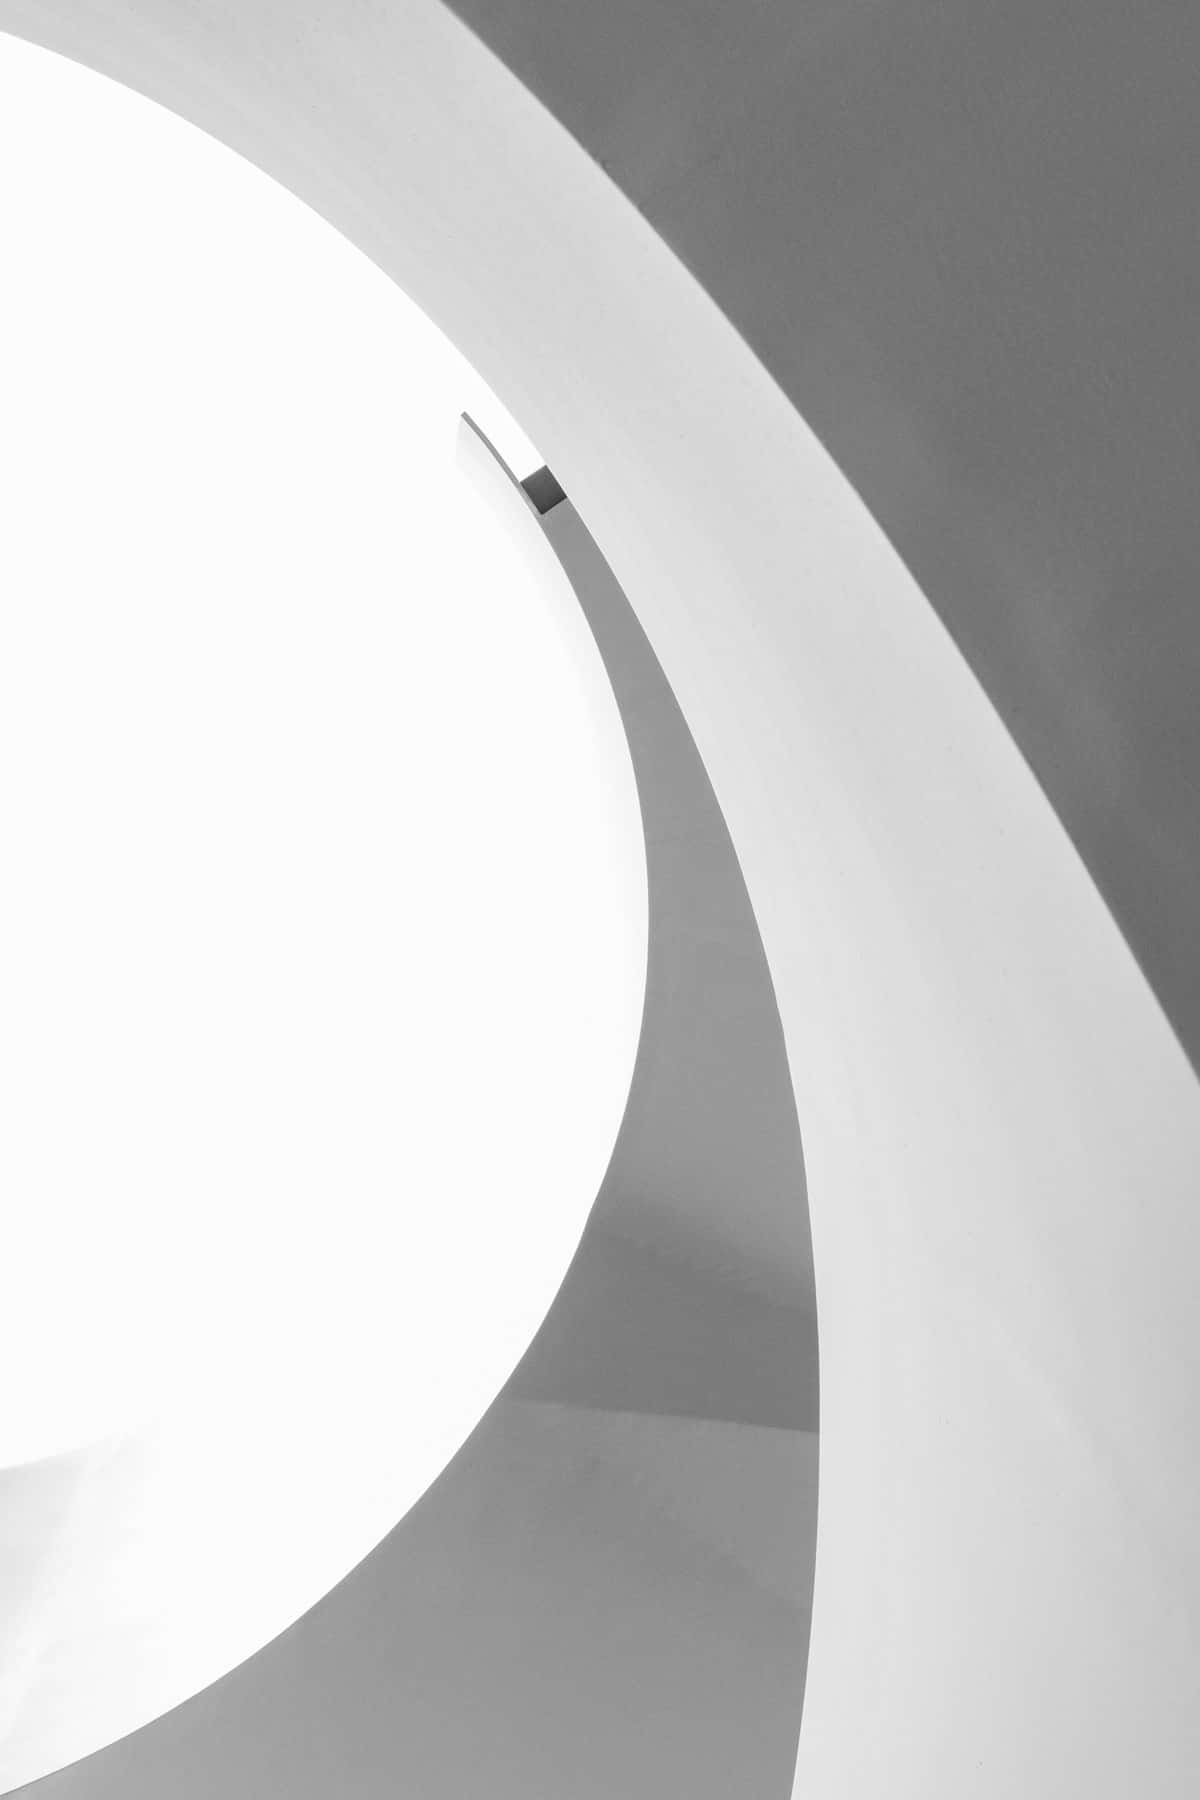 Umafoto Em Preto E Branco De Uma Escada Em Espiral Papel de Parede